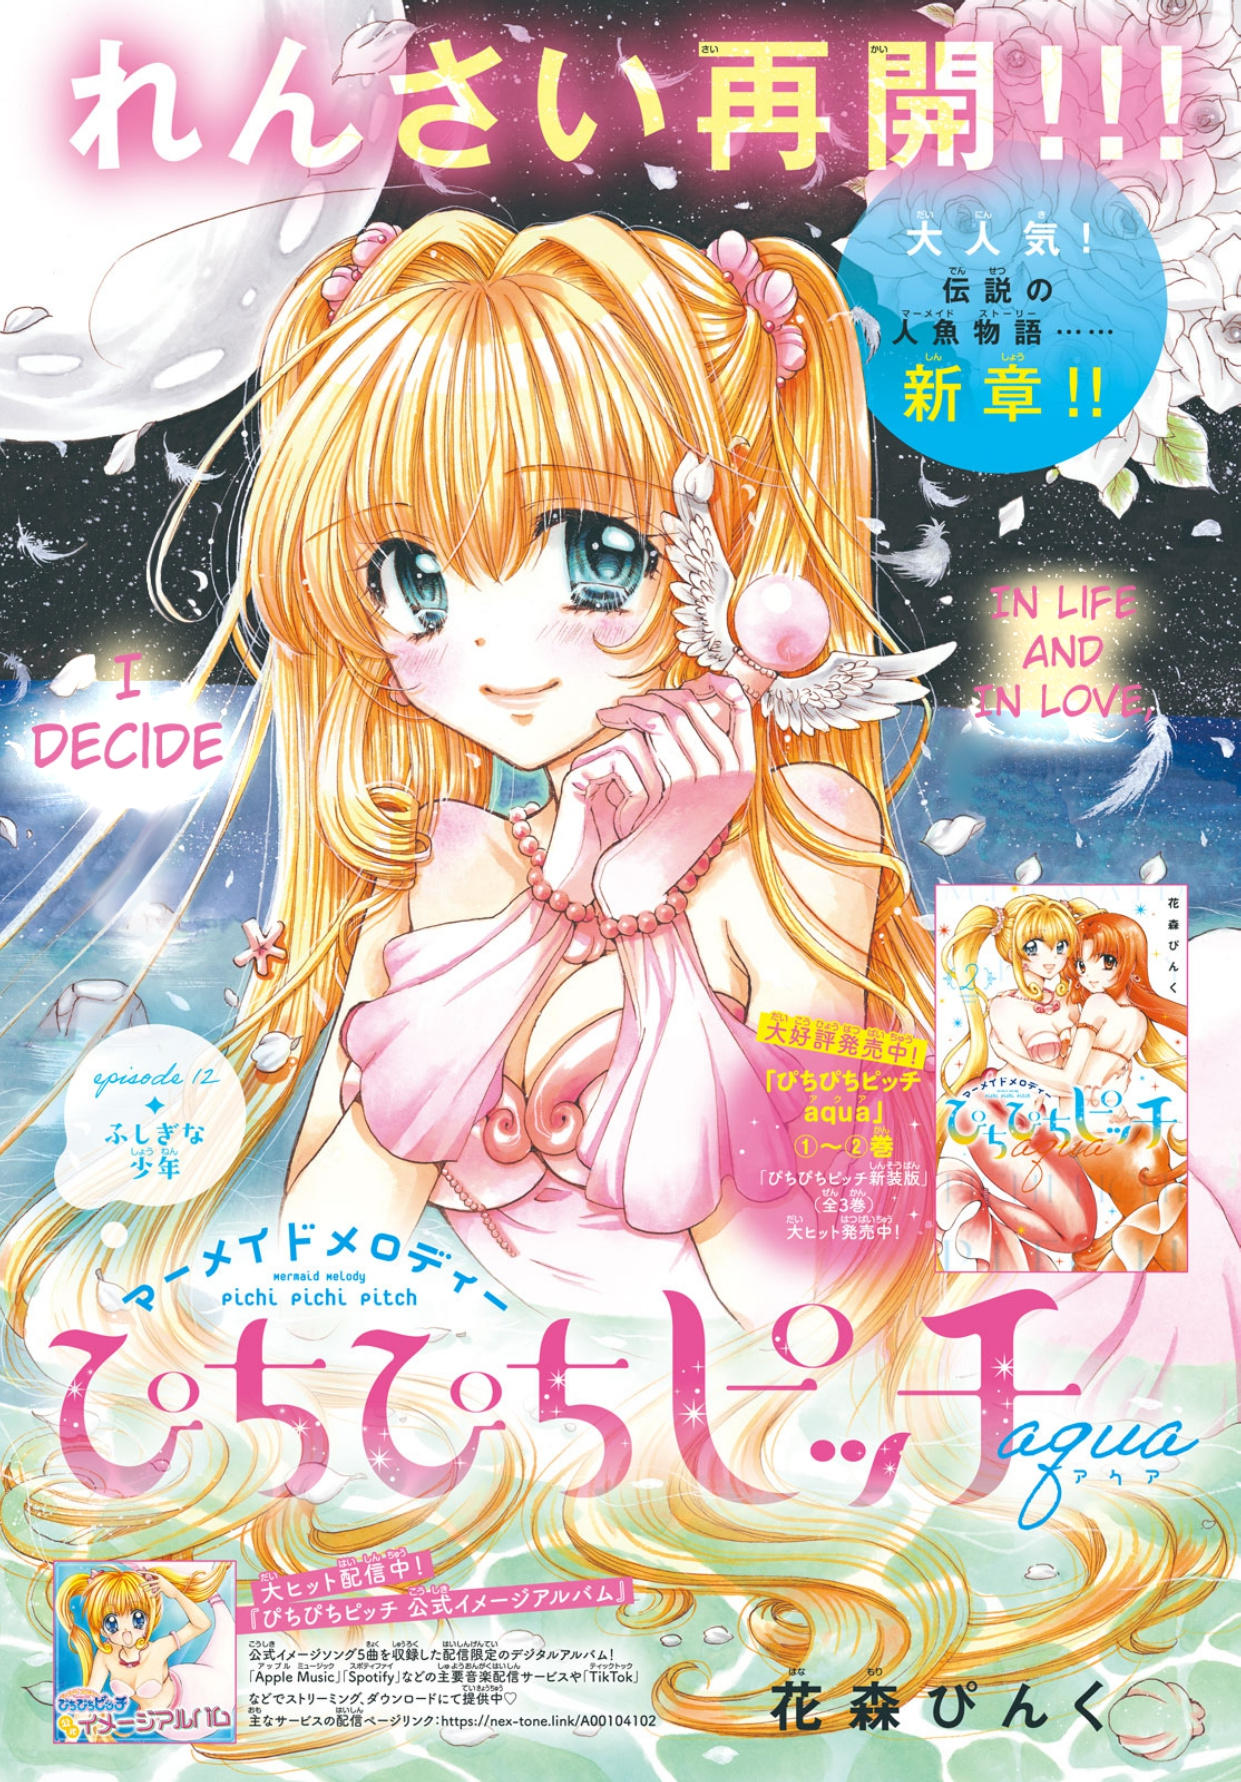 Read Mermaid Melody Pichi Pichi Pitch Aqua Chapter 12 on Mangakakalot